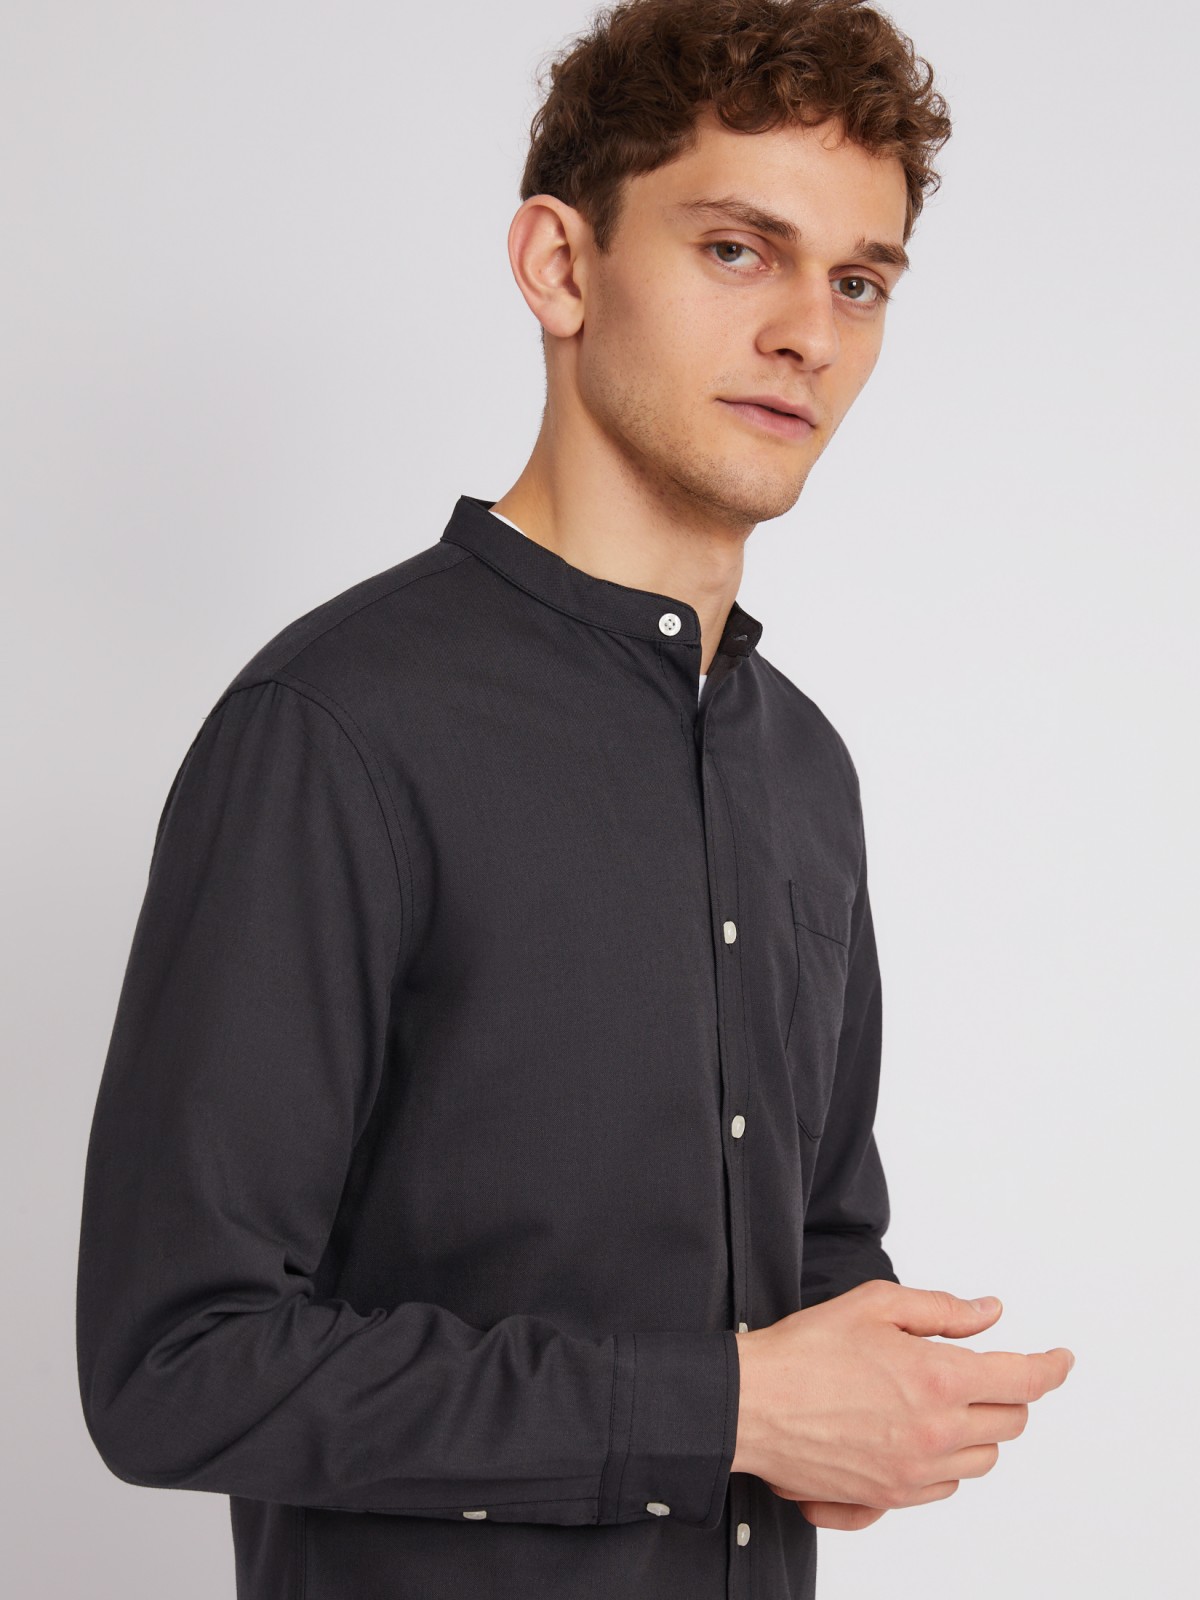 Офисная рубашка с воротником-стойкой и длинным рукавом zolla 21232214R043, цвет черный, размер S - фото 5